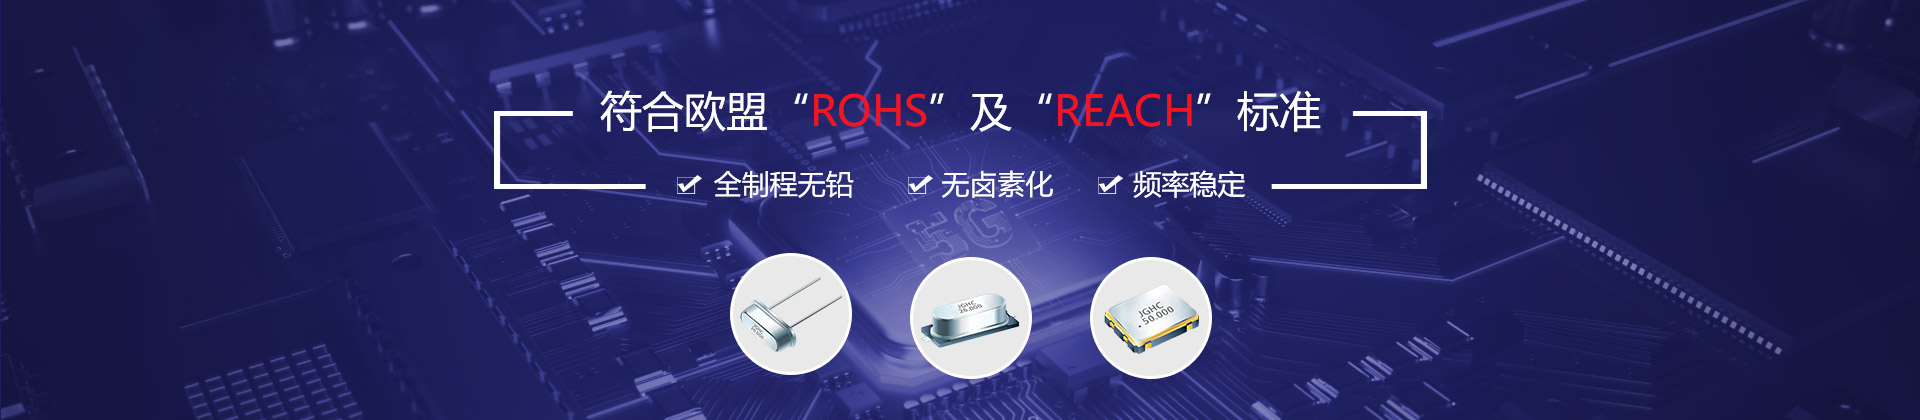 晶光华-符合欧盟“ROHS”及“REACH”标准